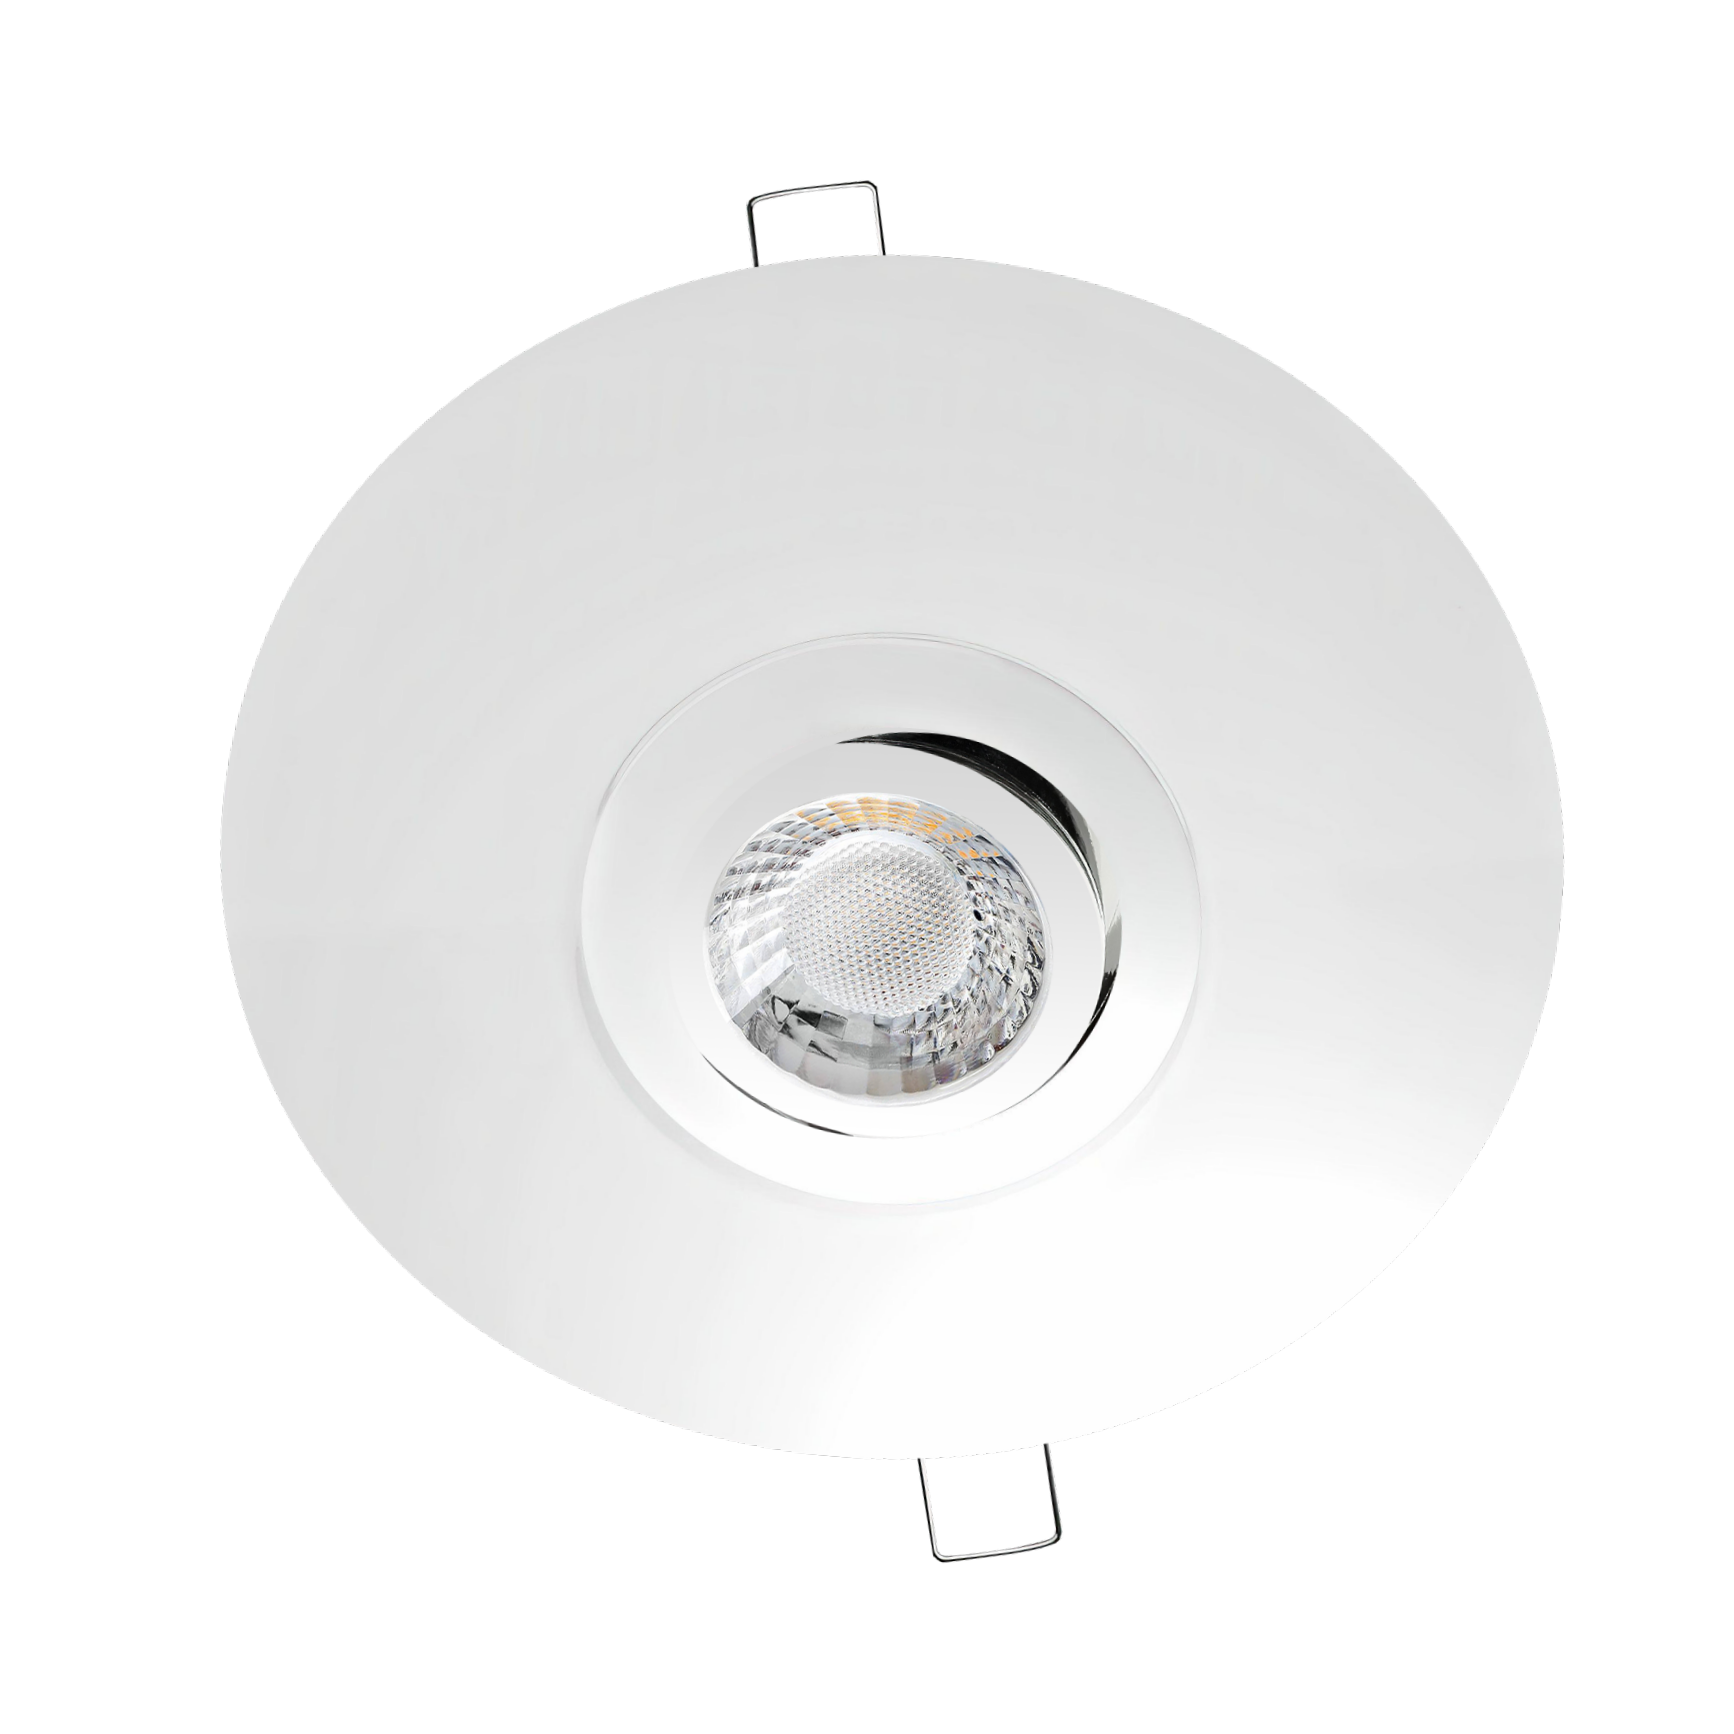 LED Einbaustrahler mit Ausgleichsblende für große Lochausschnitte Chrom glänzend | Rund | schwenkbar | Lochmaß Ø 68mm - 180mm | Einbautiefe 64mm | GU10 230V 